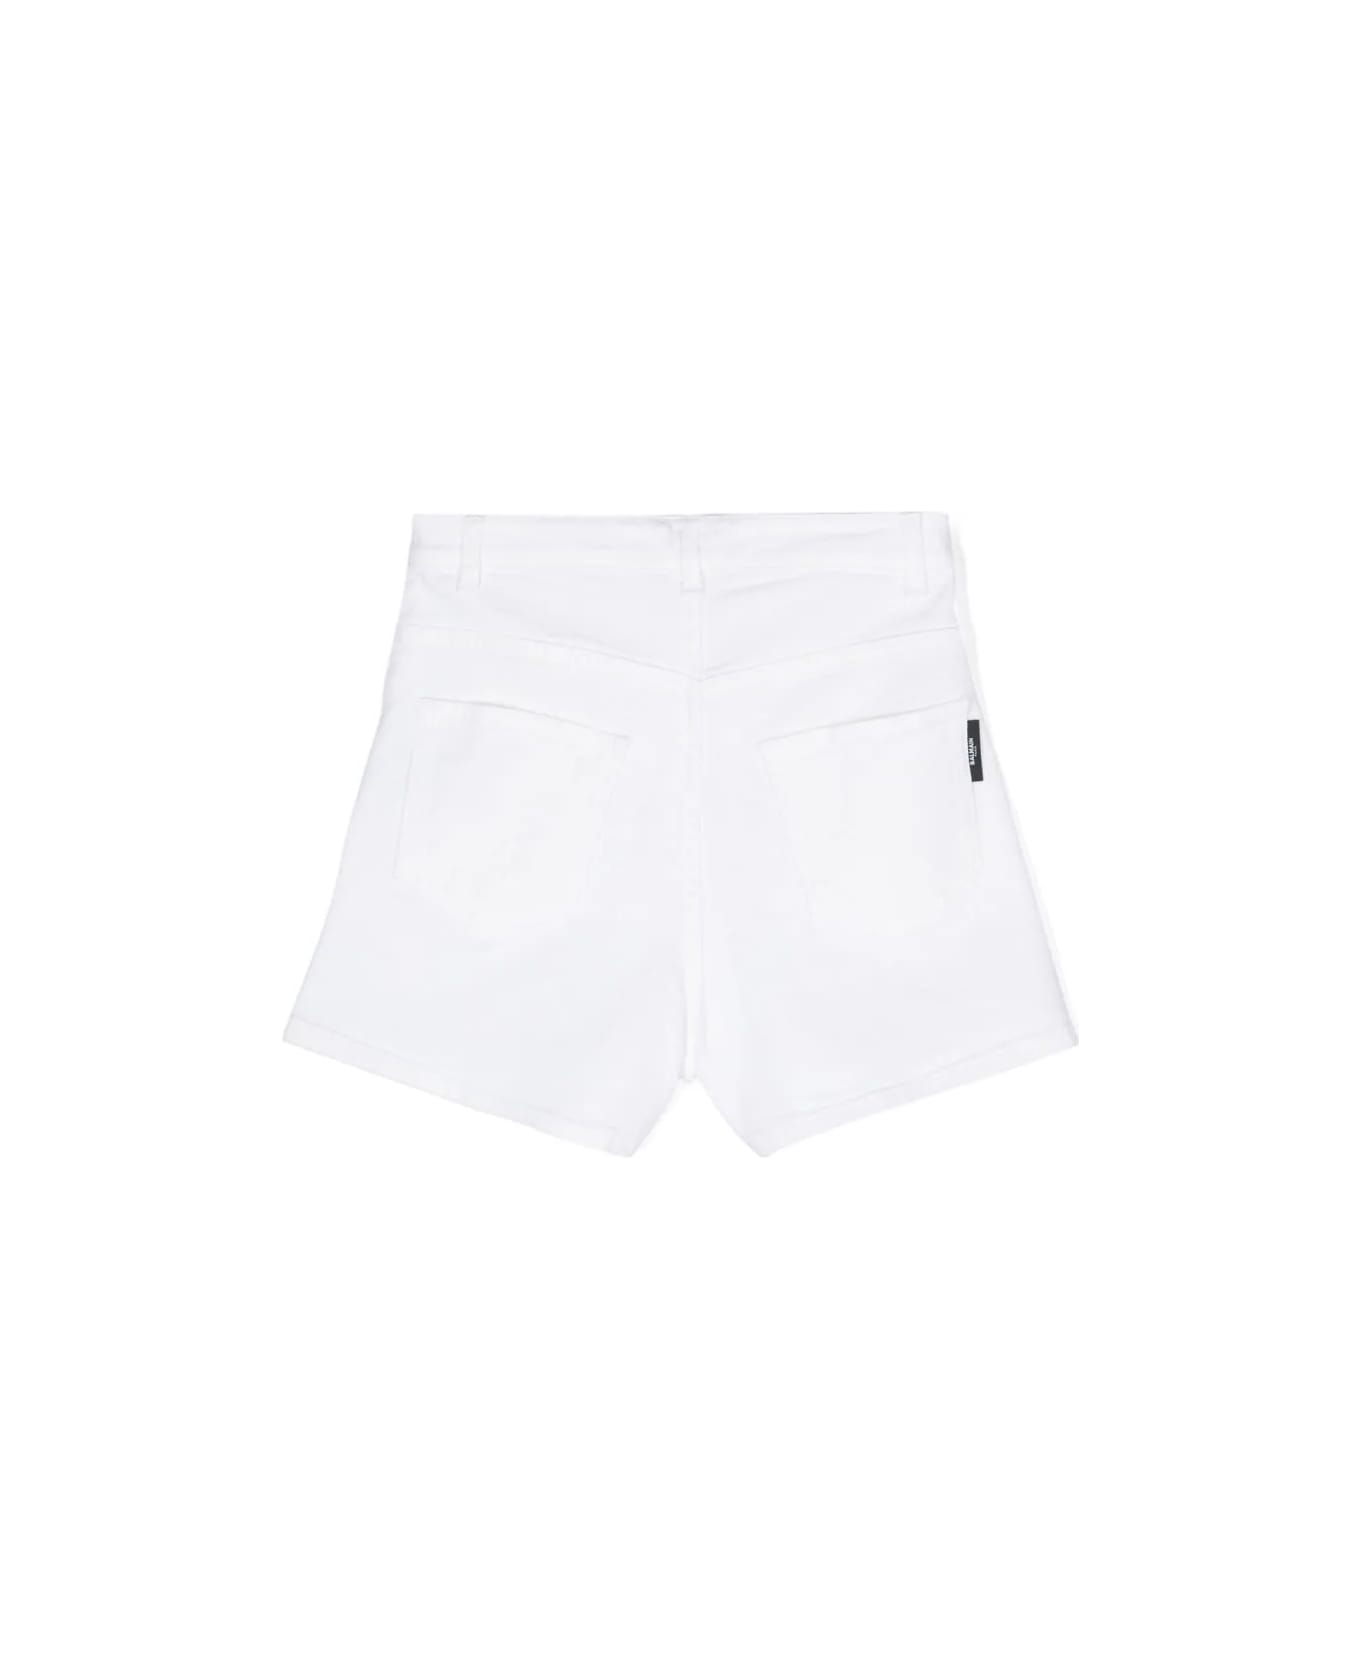 Balmain Shorts Denim - White/gold ボトムス